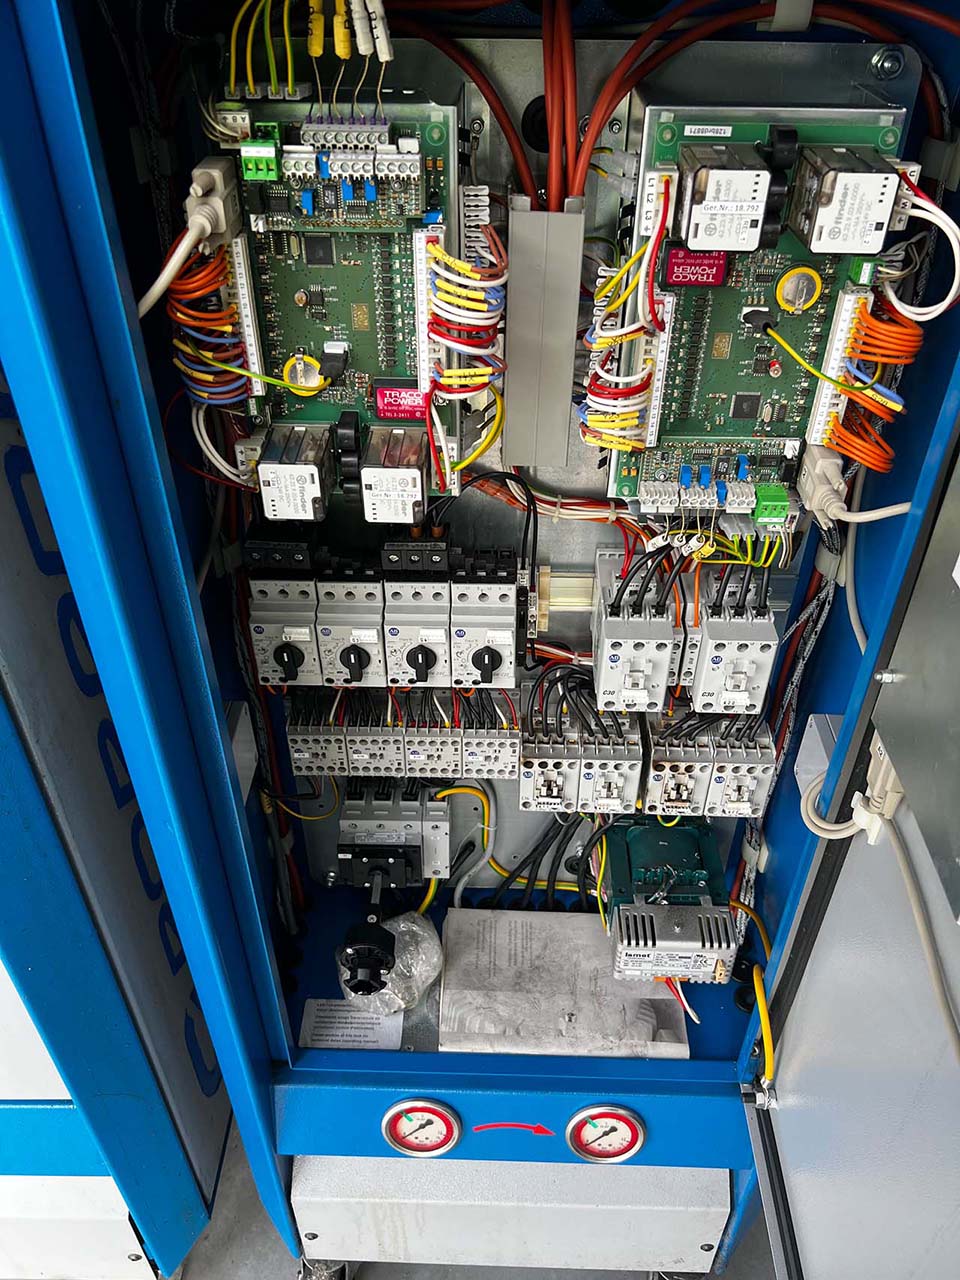 Robamat Thermocast 5212 yağ sıcaklık kontrol ünitesi ZU2199, kullanılmış